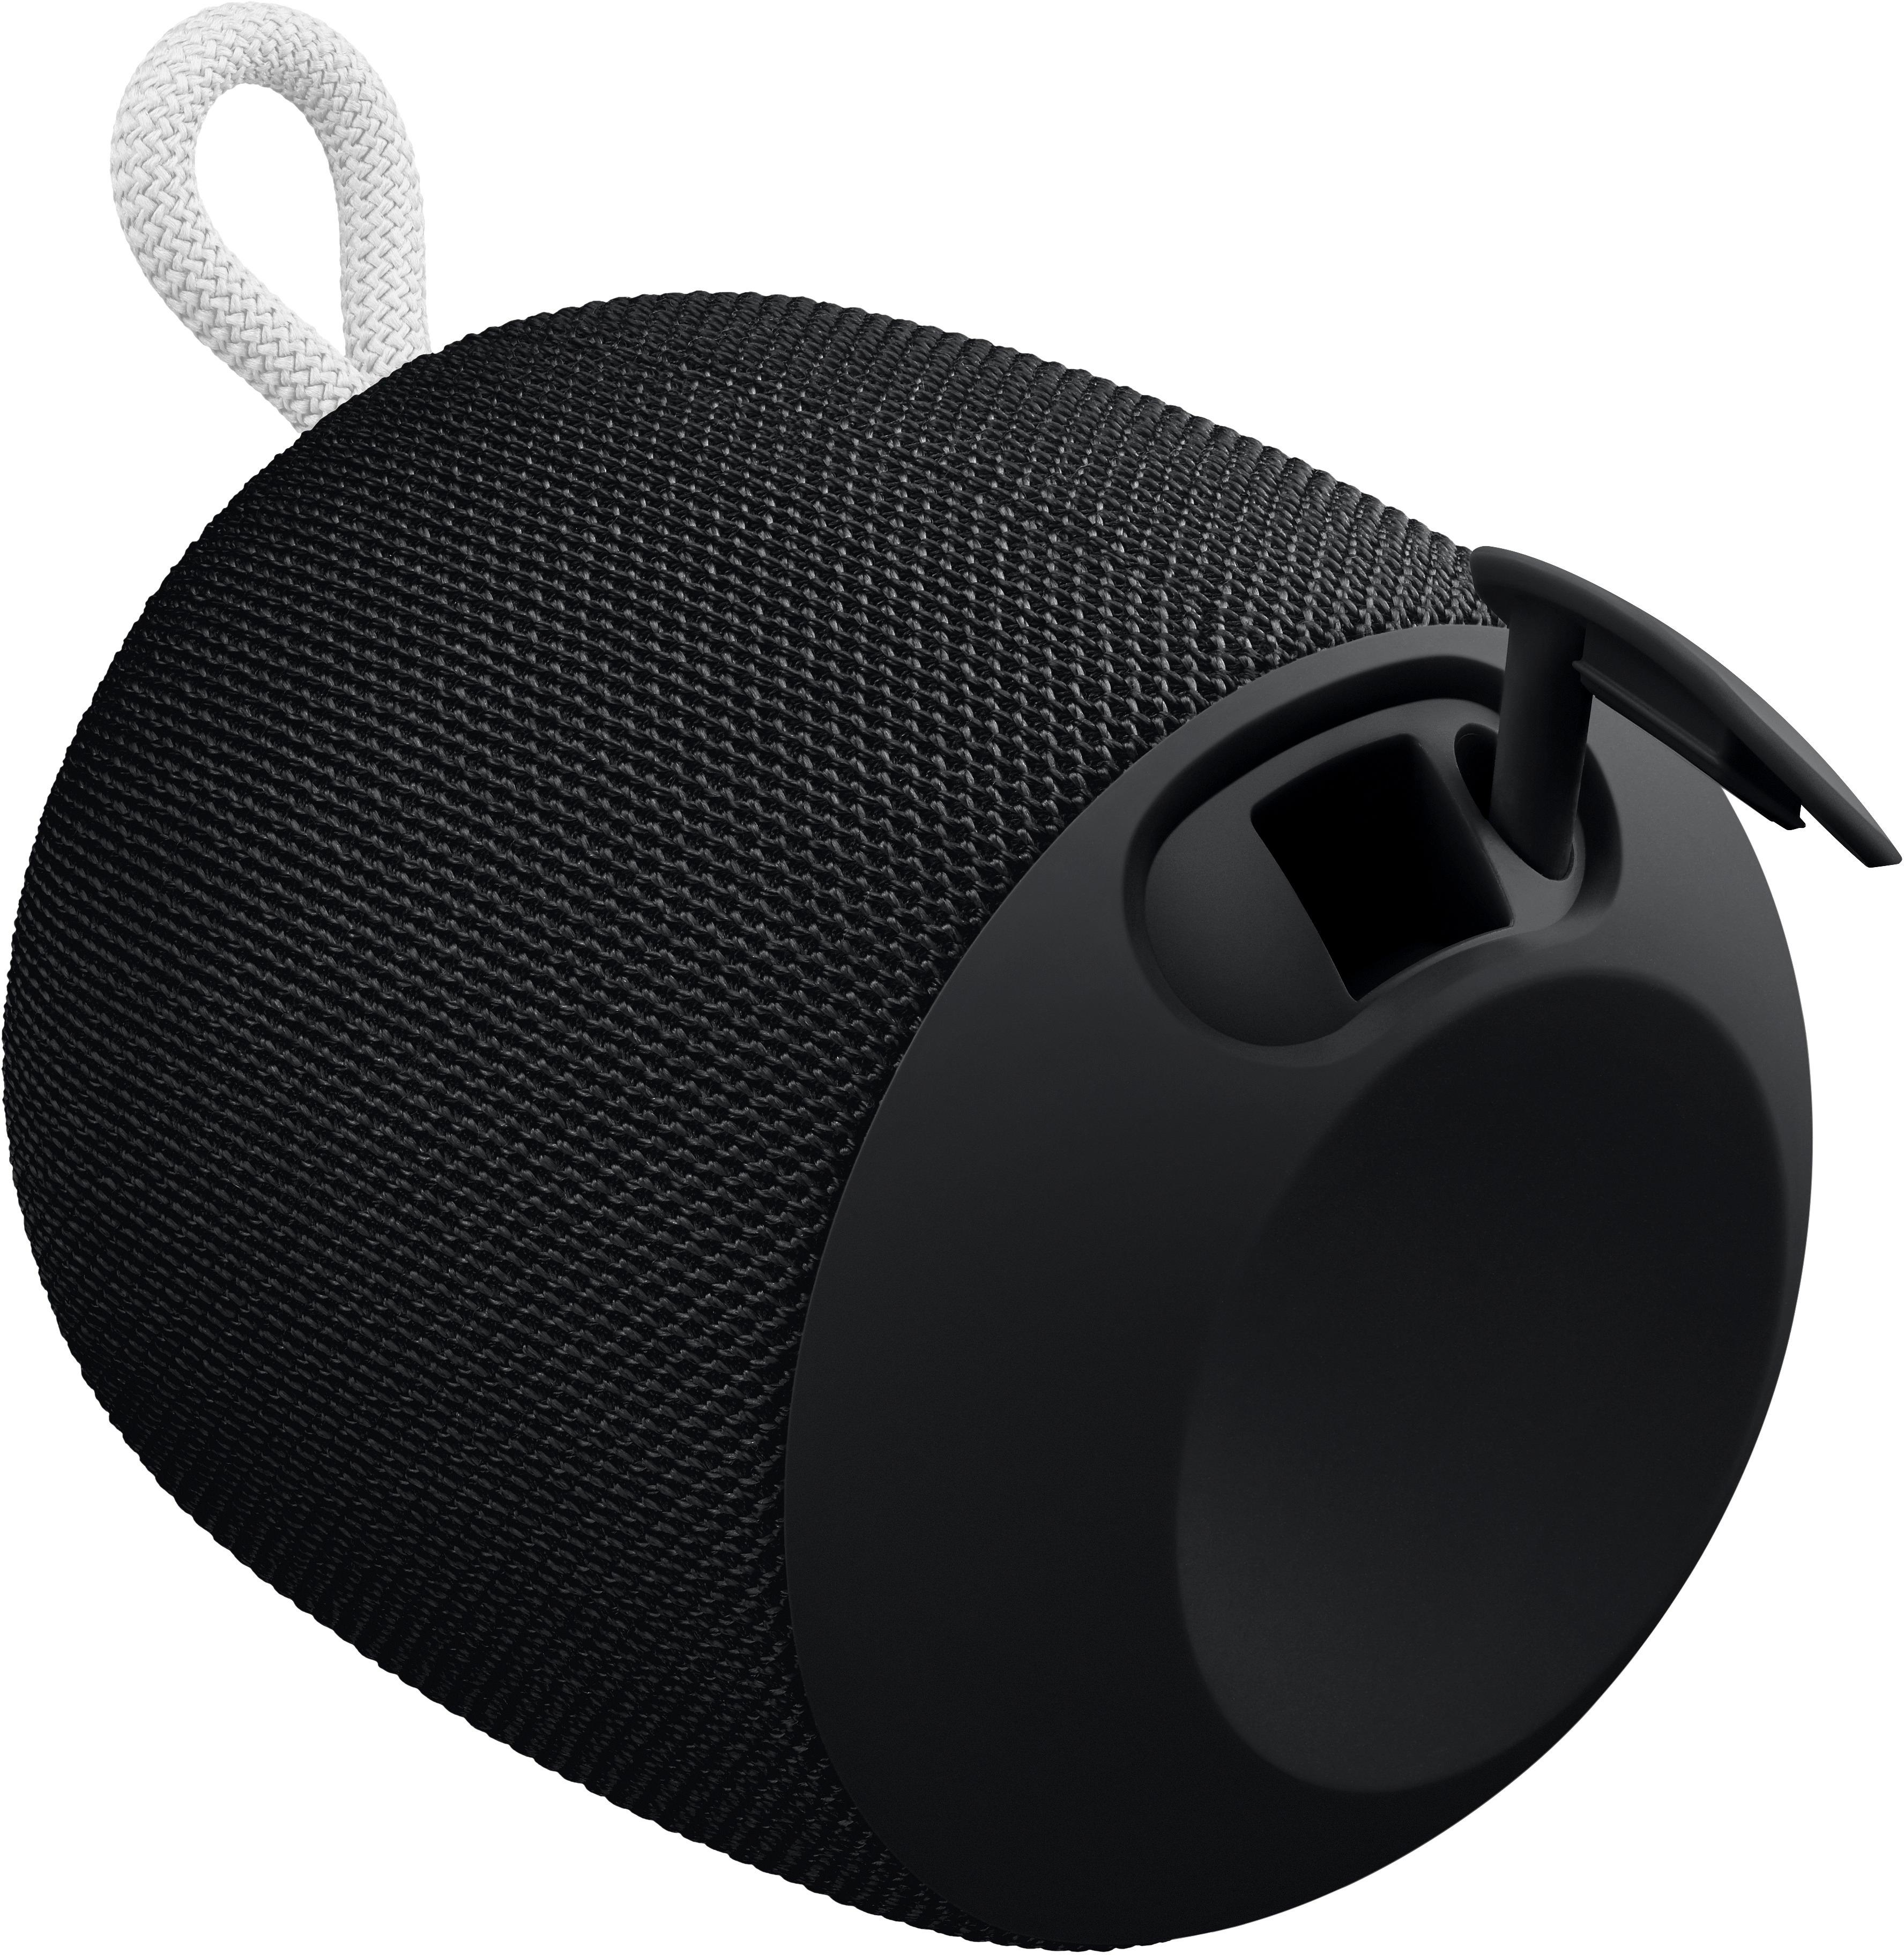 ue ultimate ears wonderboom wireless speaker phantom black